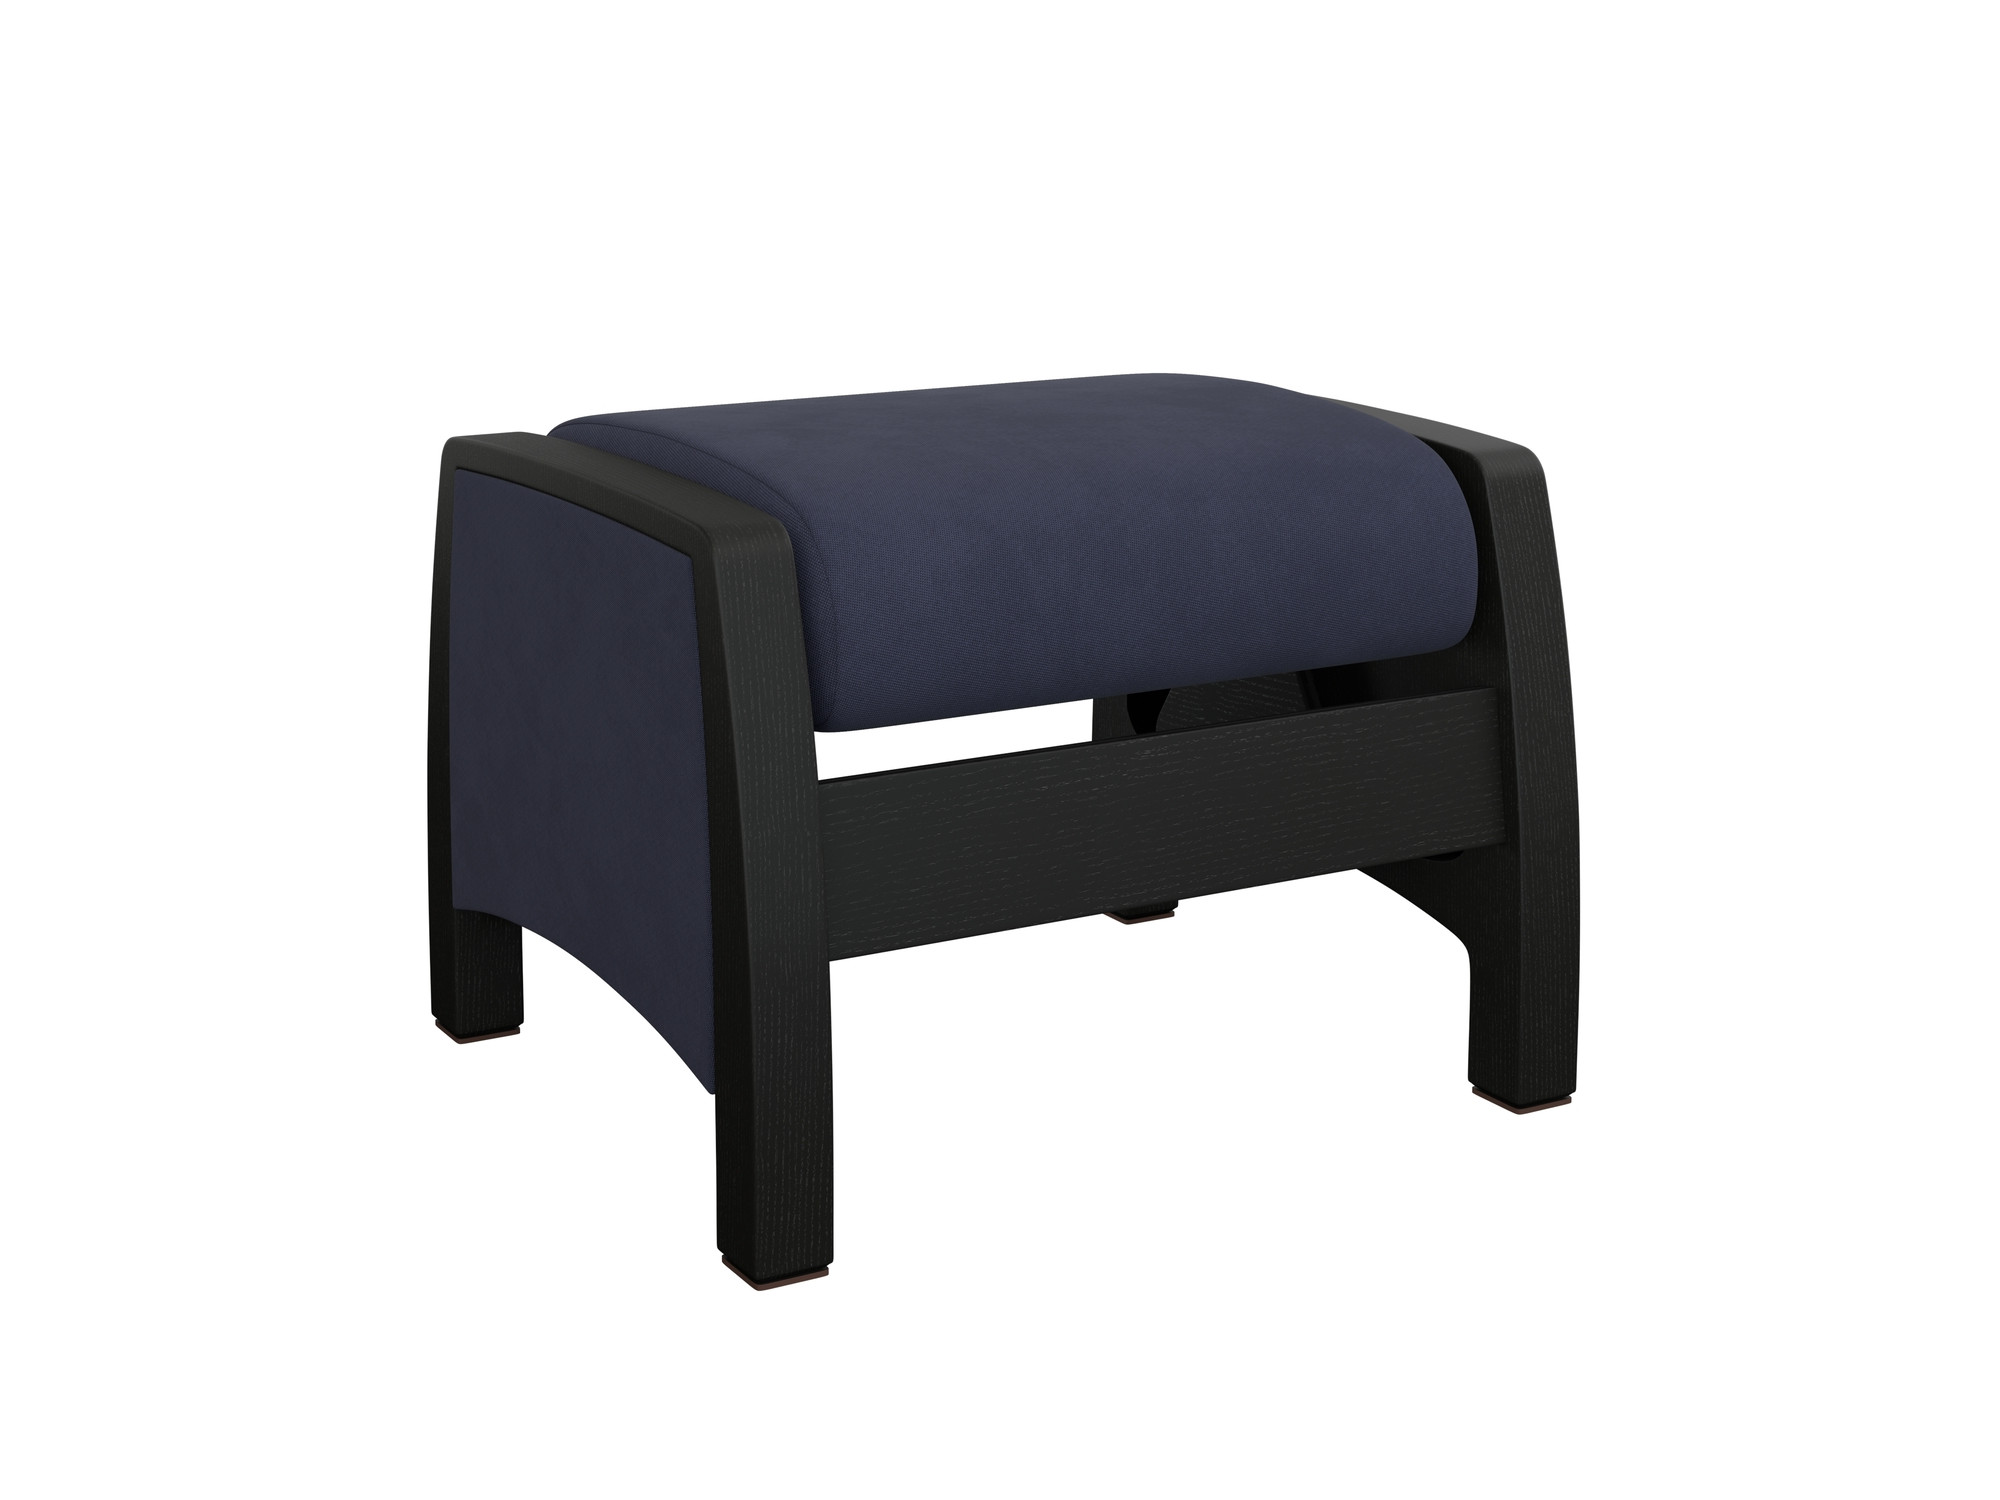 кресло для отдыха модель s7 люкс mebelvia soro 86 ткань шенилл облицованная шпоном берёзовая фанера Пуф-глайдер Модель Balance 1 MebelVia Verona Denim Blue, Ткань Велюр, Берёзовая фанера, облицованная шпоном